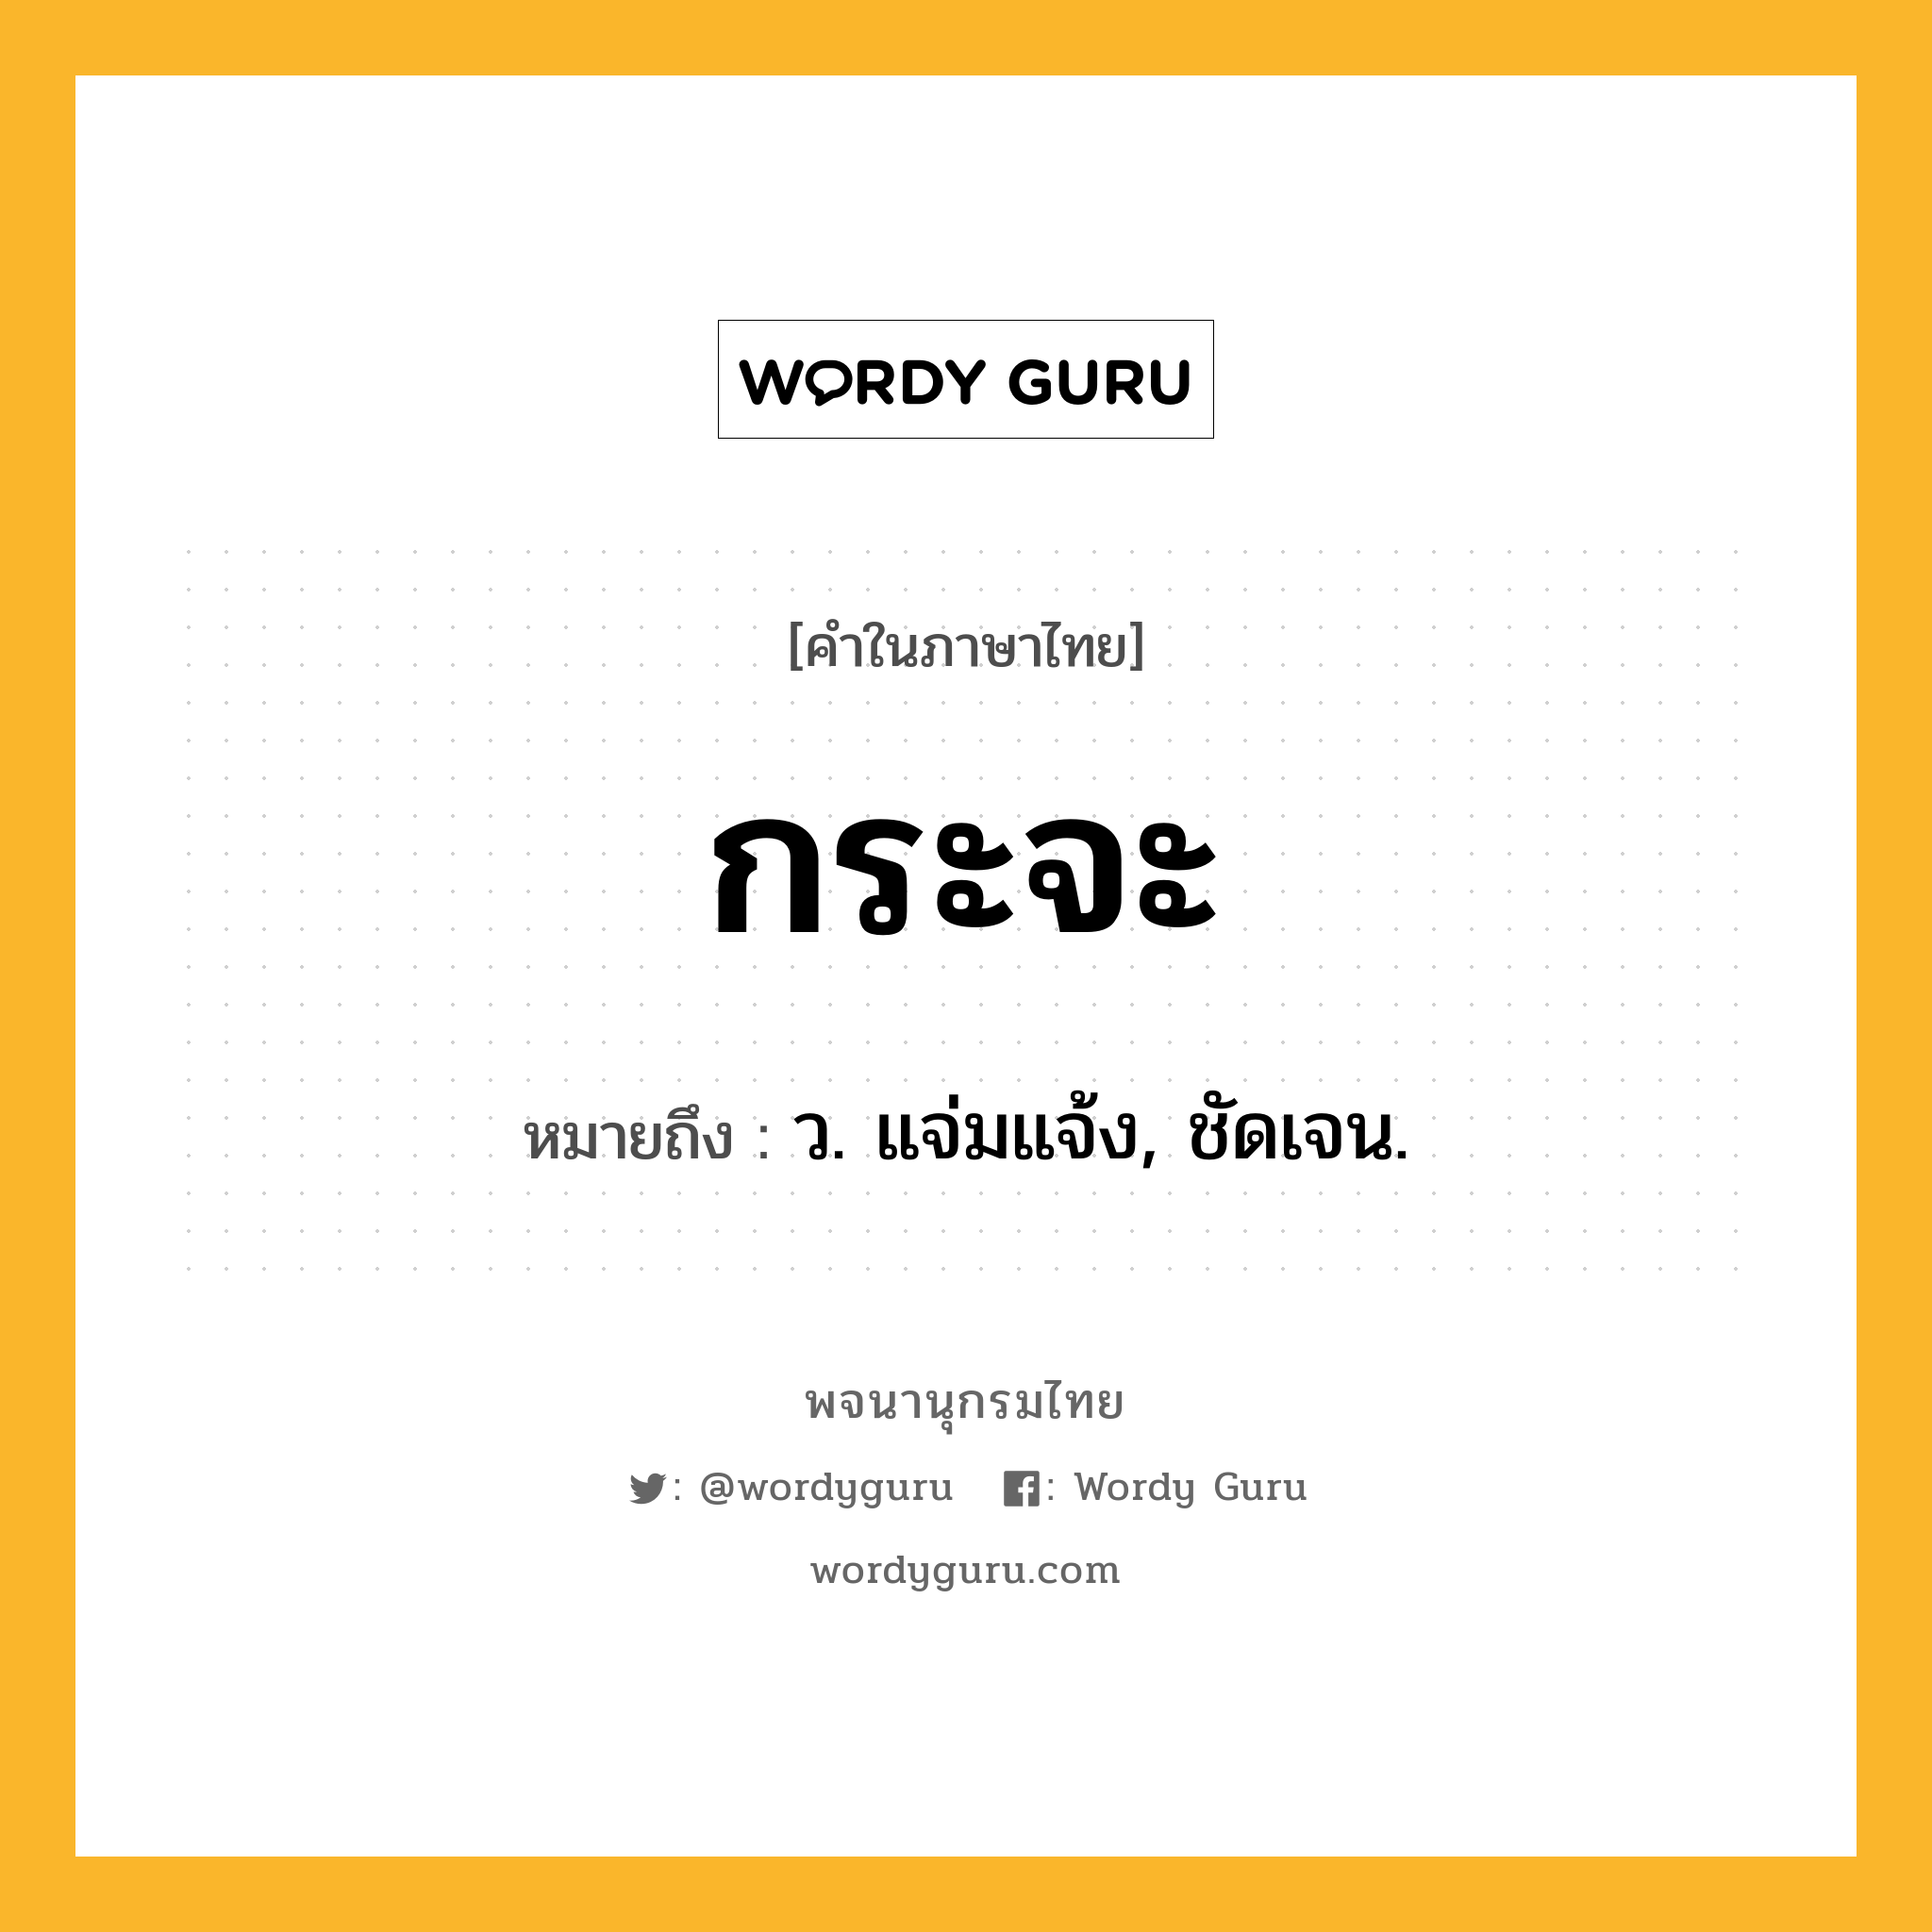 กระจะ ความหมาย หมายถึงอะไร?, คำในภาษาไทย กระจะ หมายถึง ว. แจ่มแจ้ง, ชัดเจน.